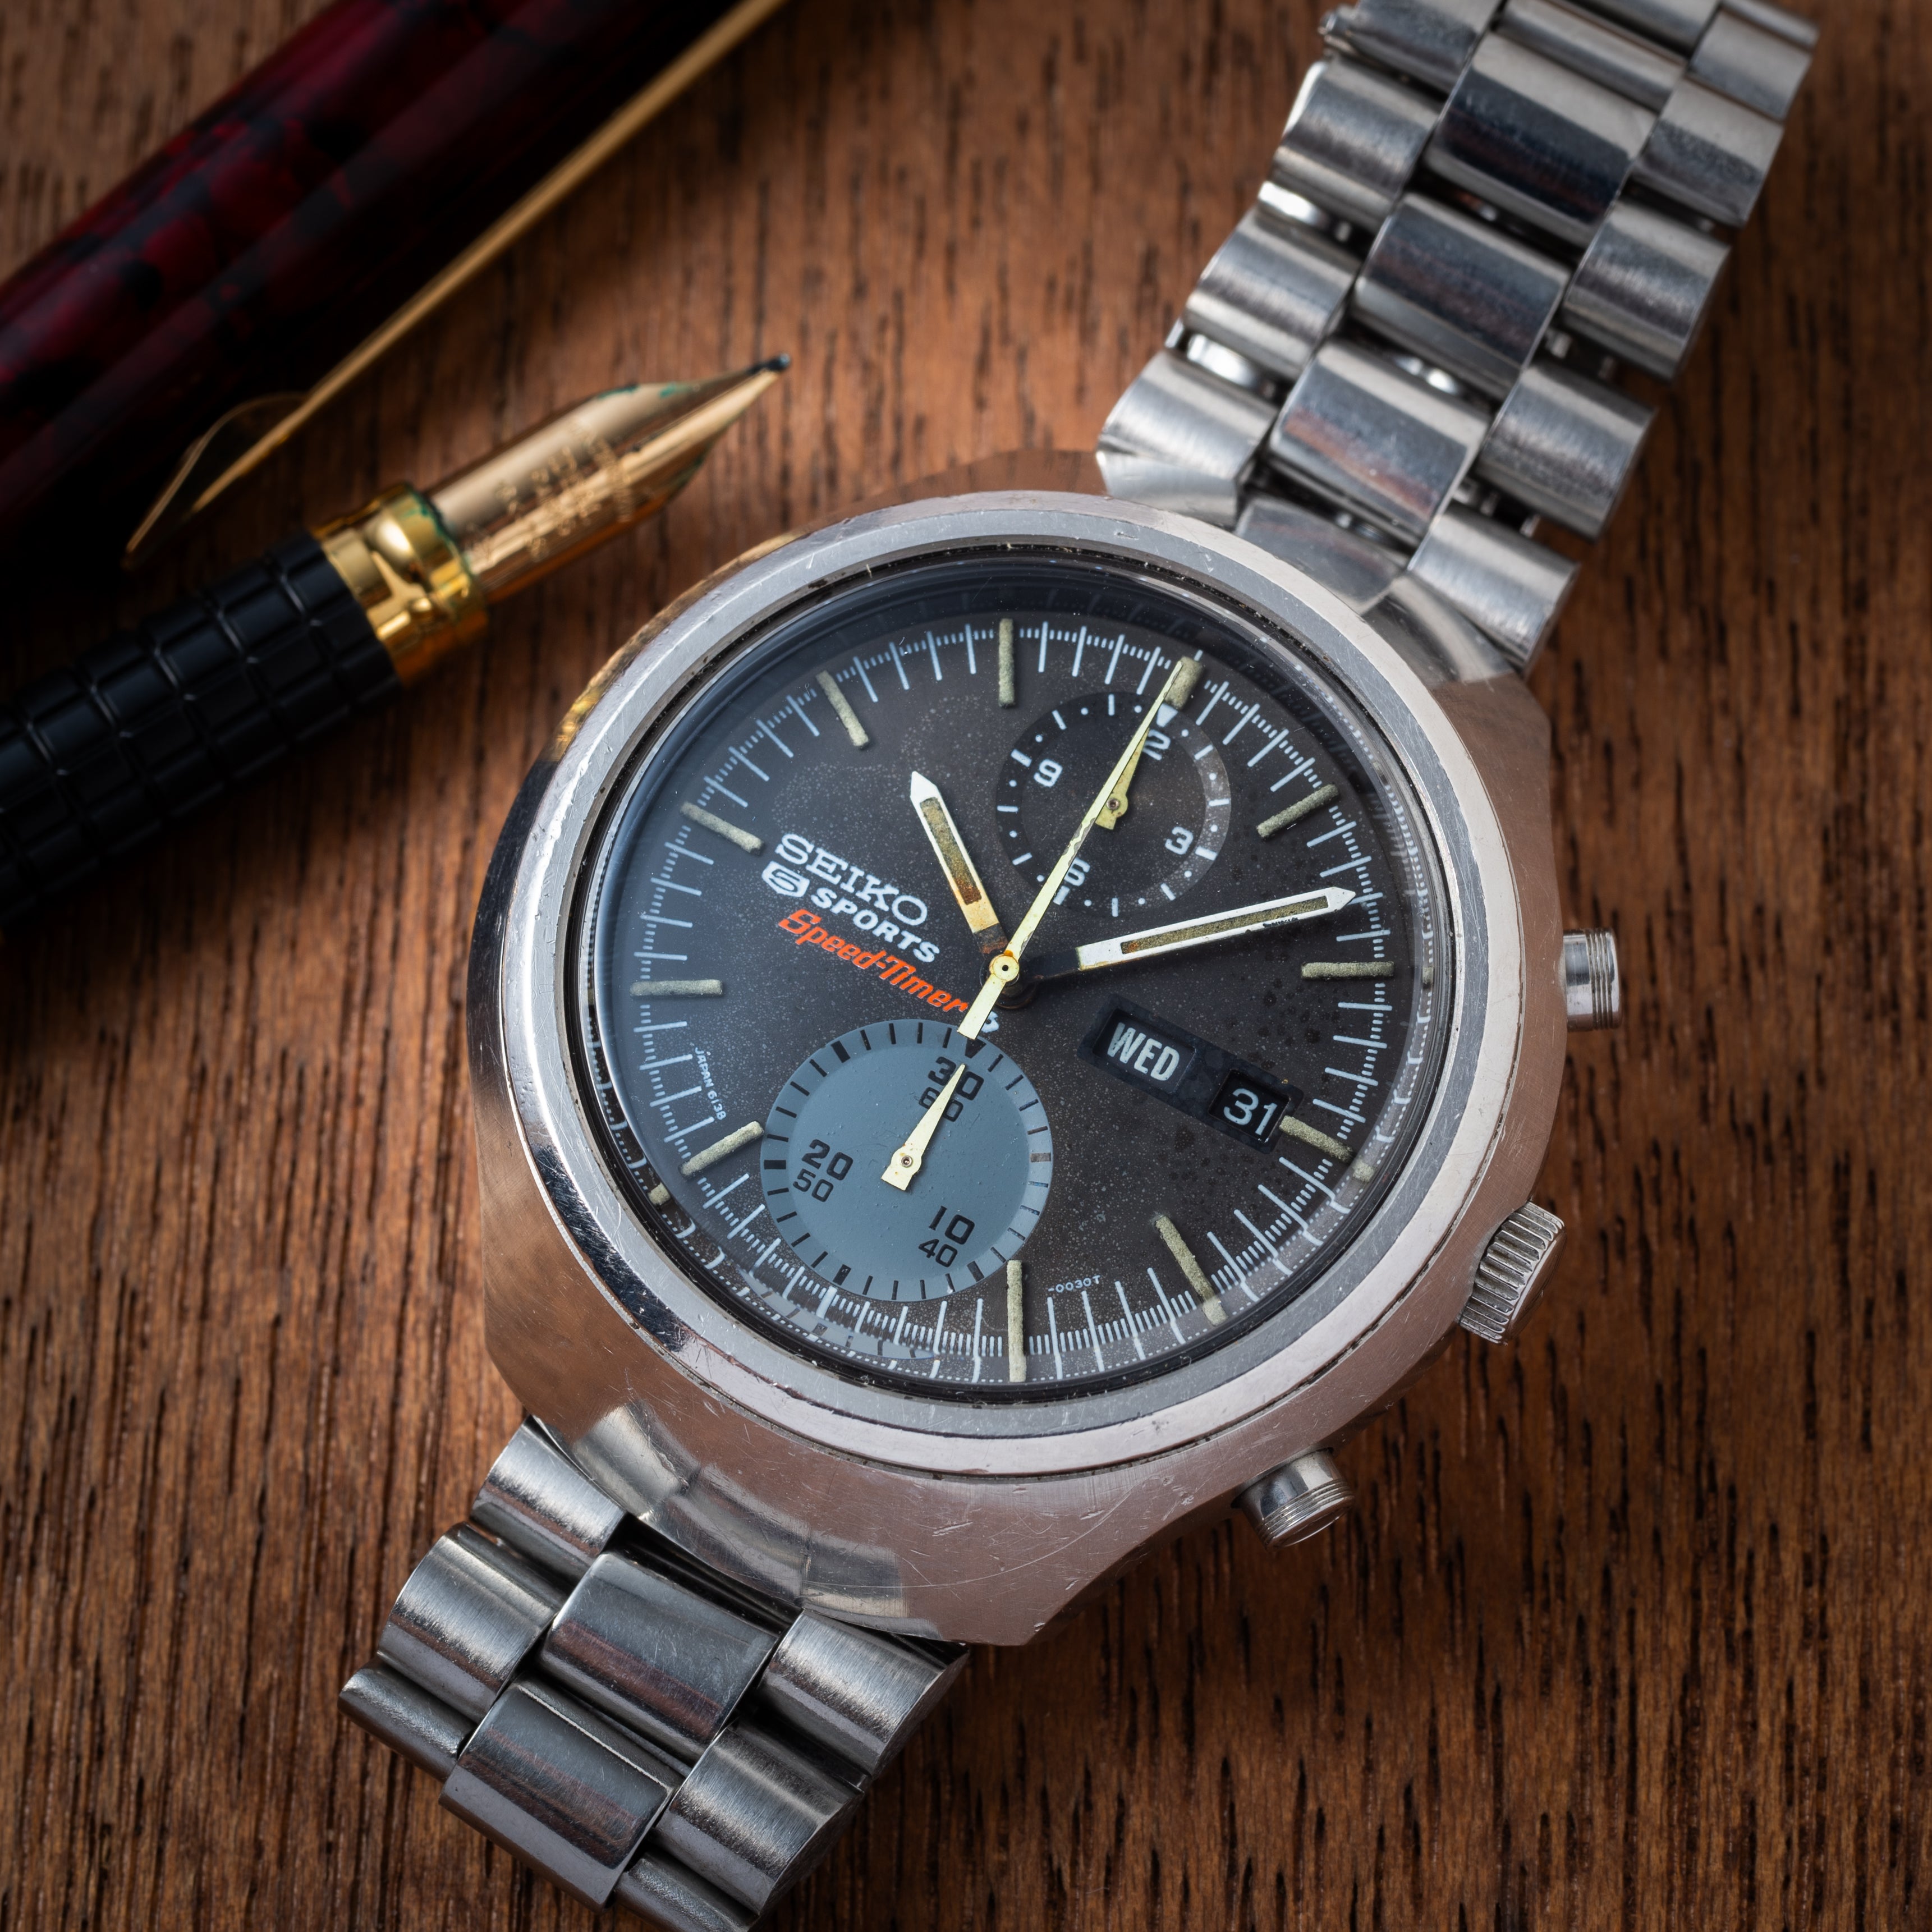 SEIKO ビッグクロノ 6138-3000 スピードタイマー - 腕時計(アナログ)